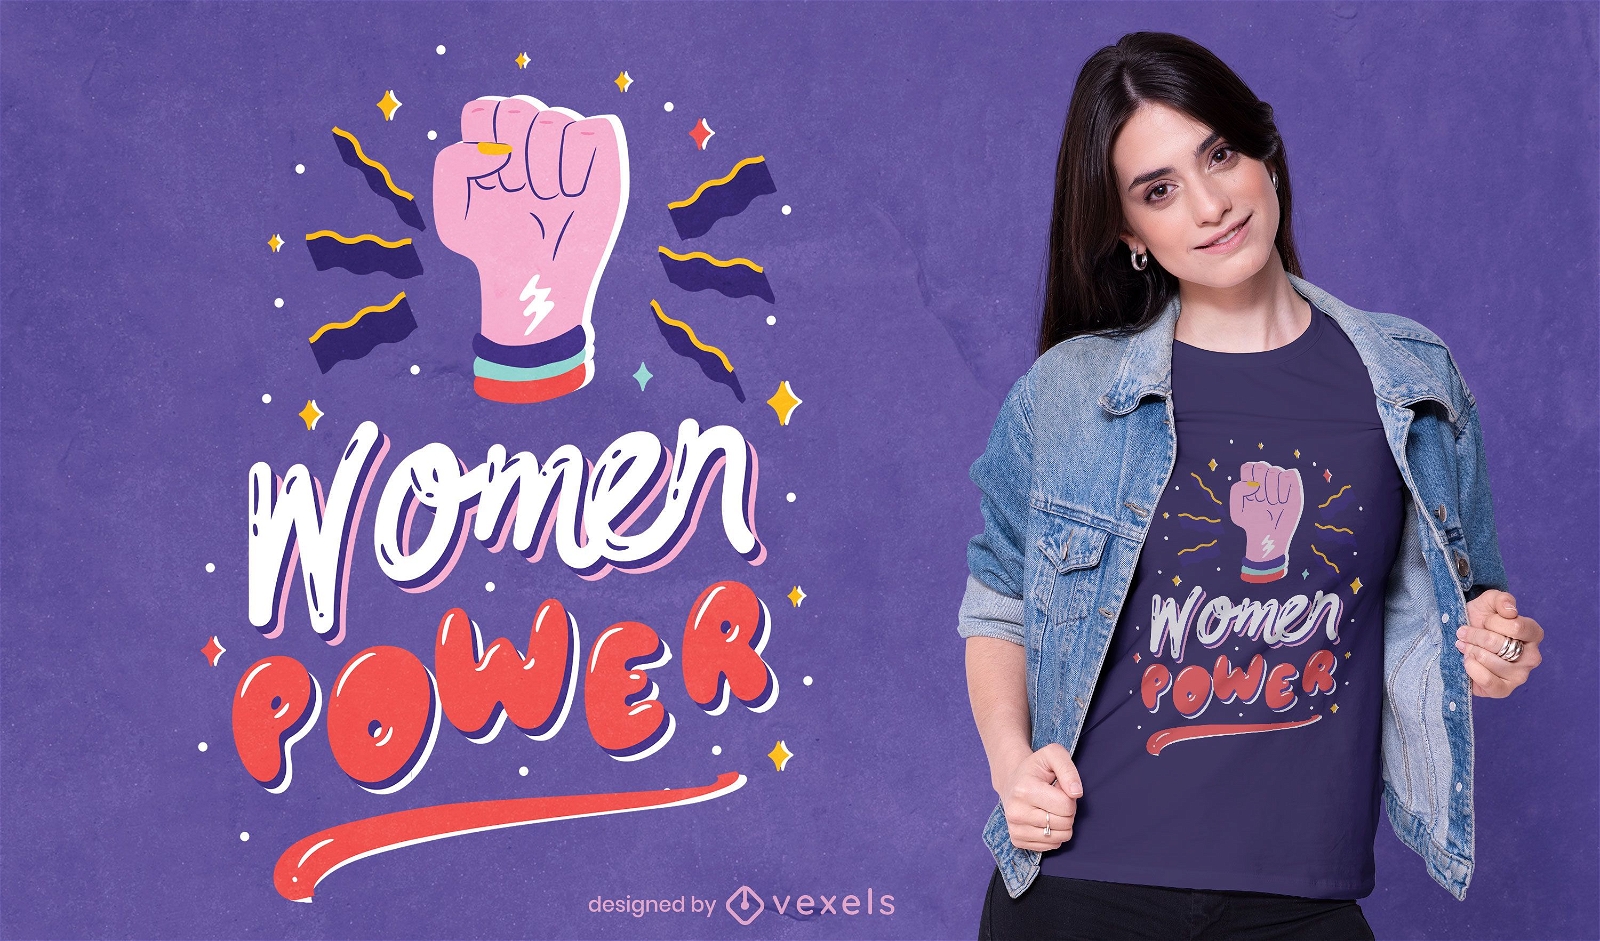 Women power t-shirt design